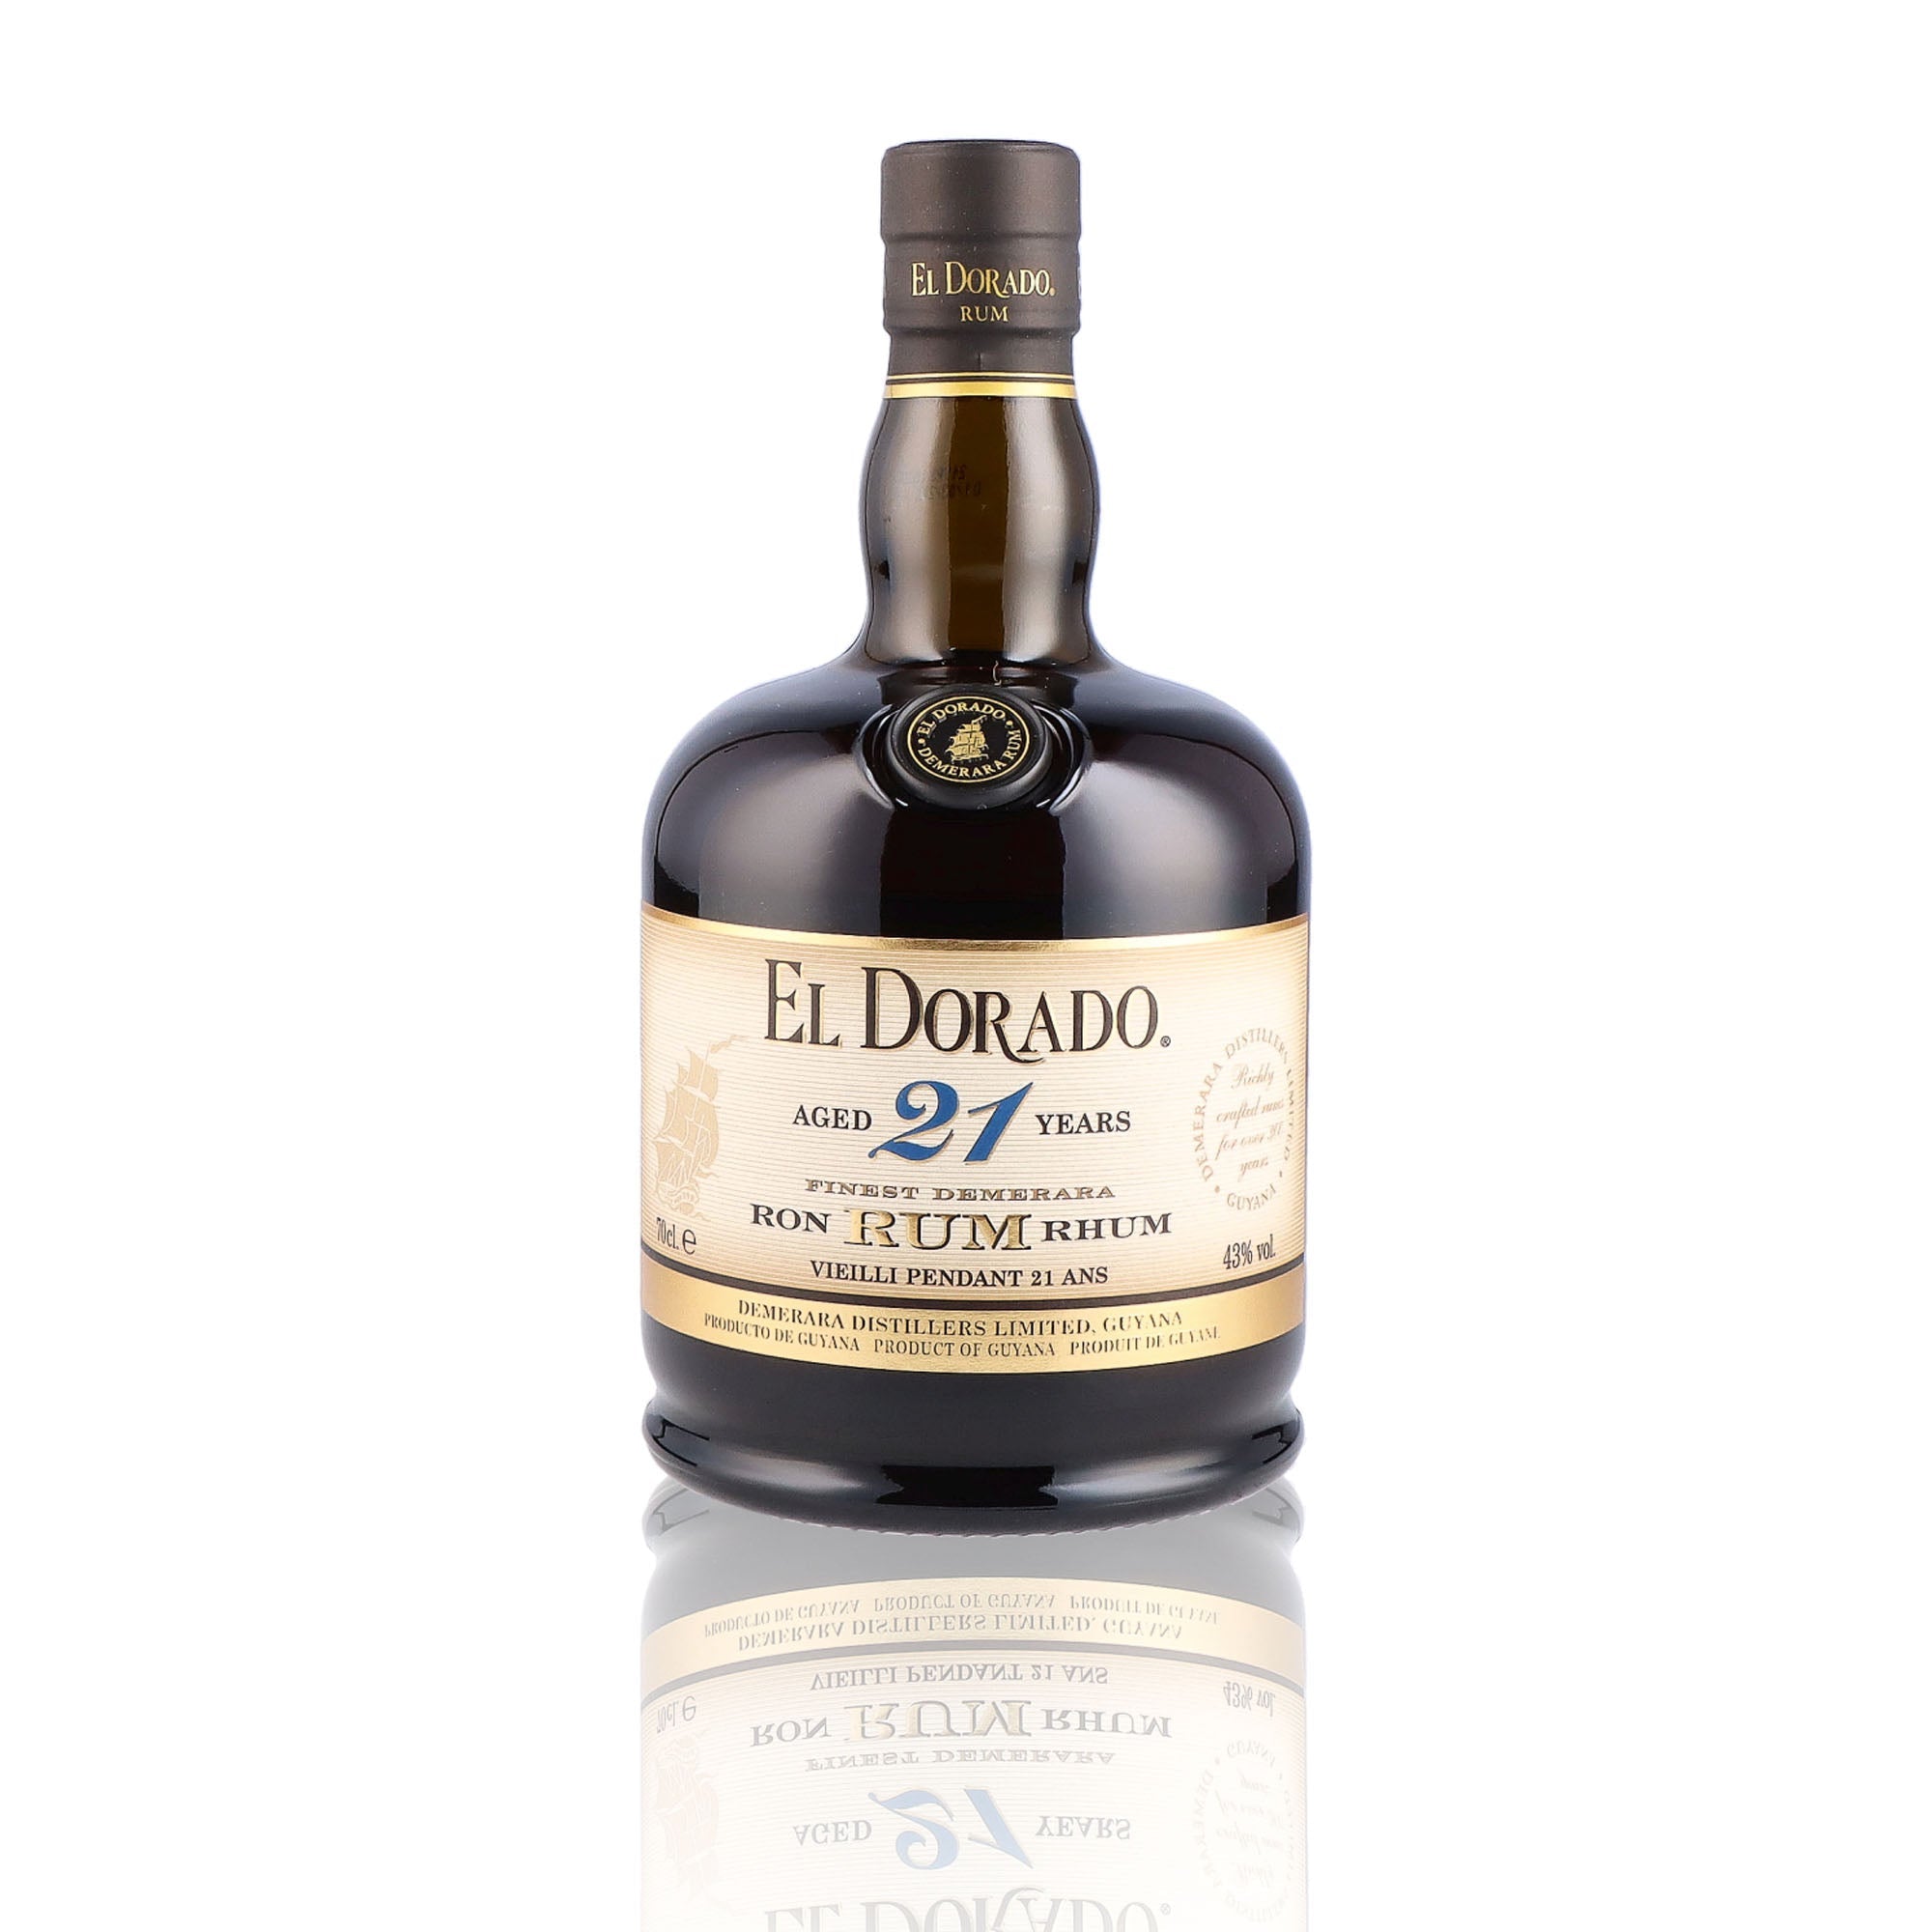 Une bouteille de rhum vieux, de la marque El Dorado, 21 ans d'âge.